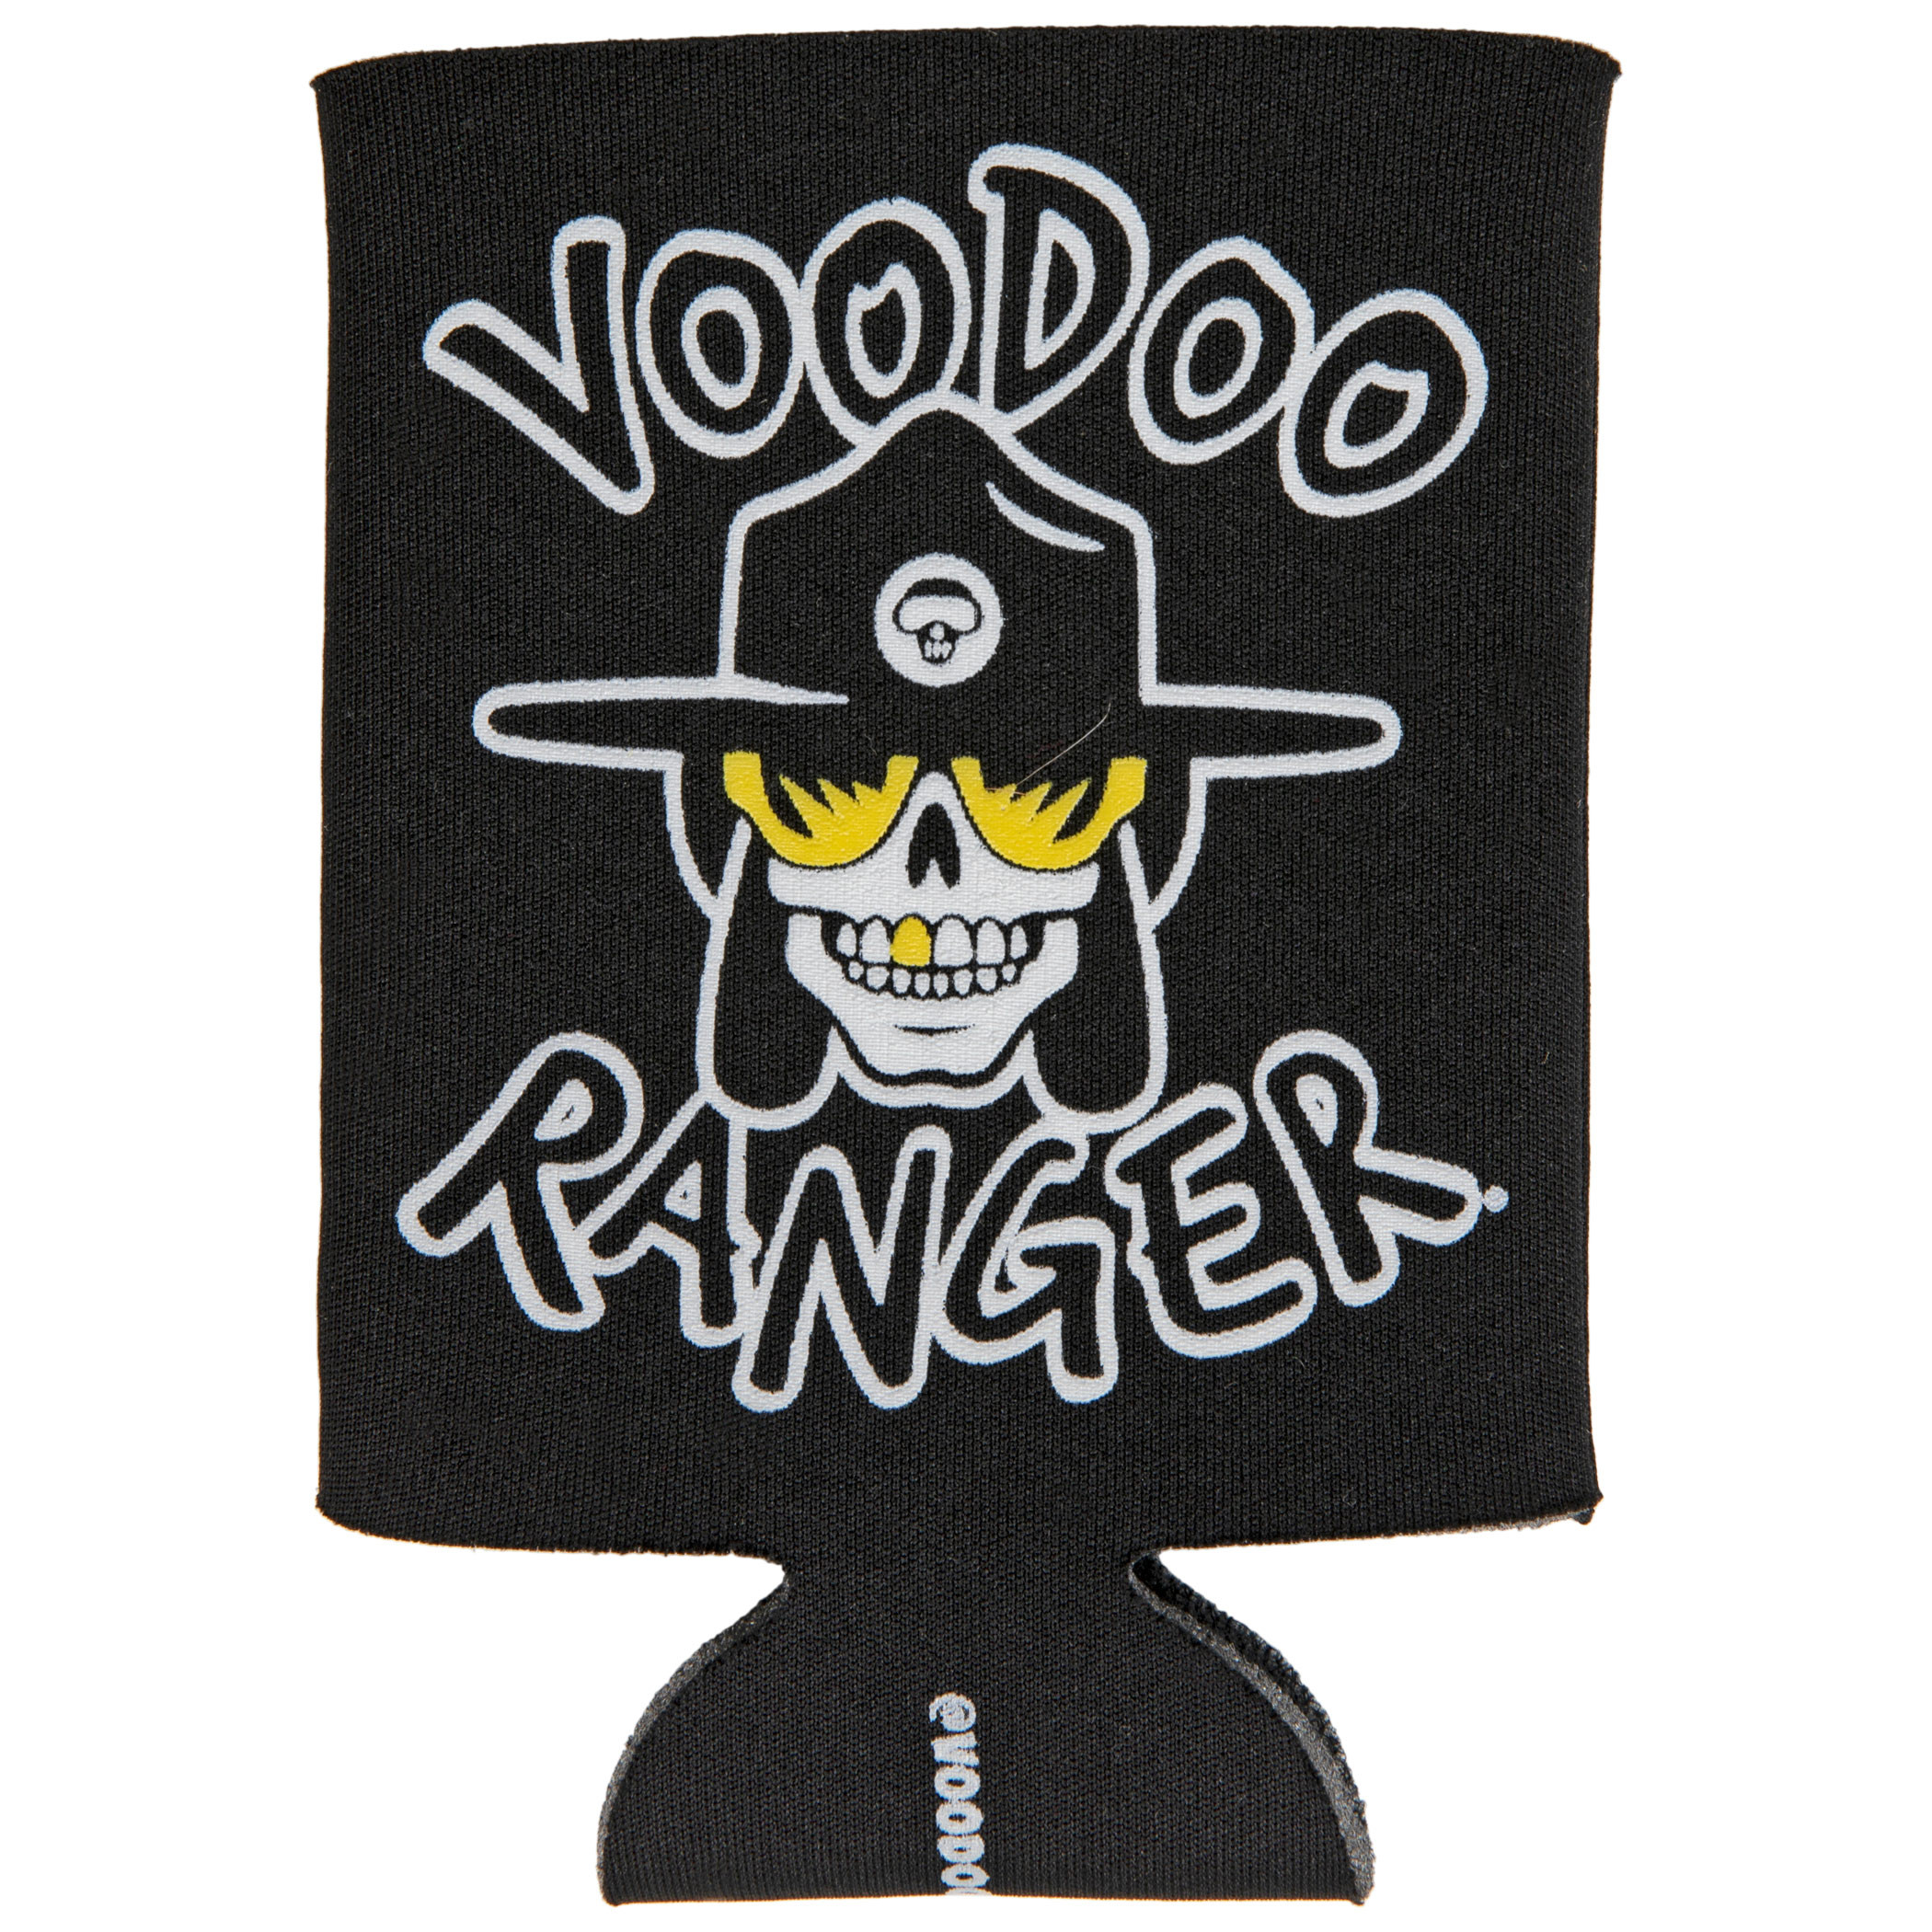 New Belgium Voodoo Ranger Can Cooler